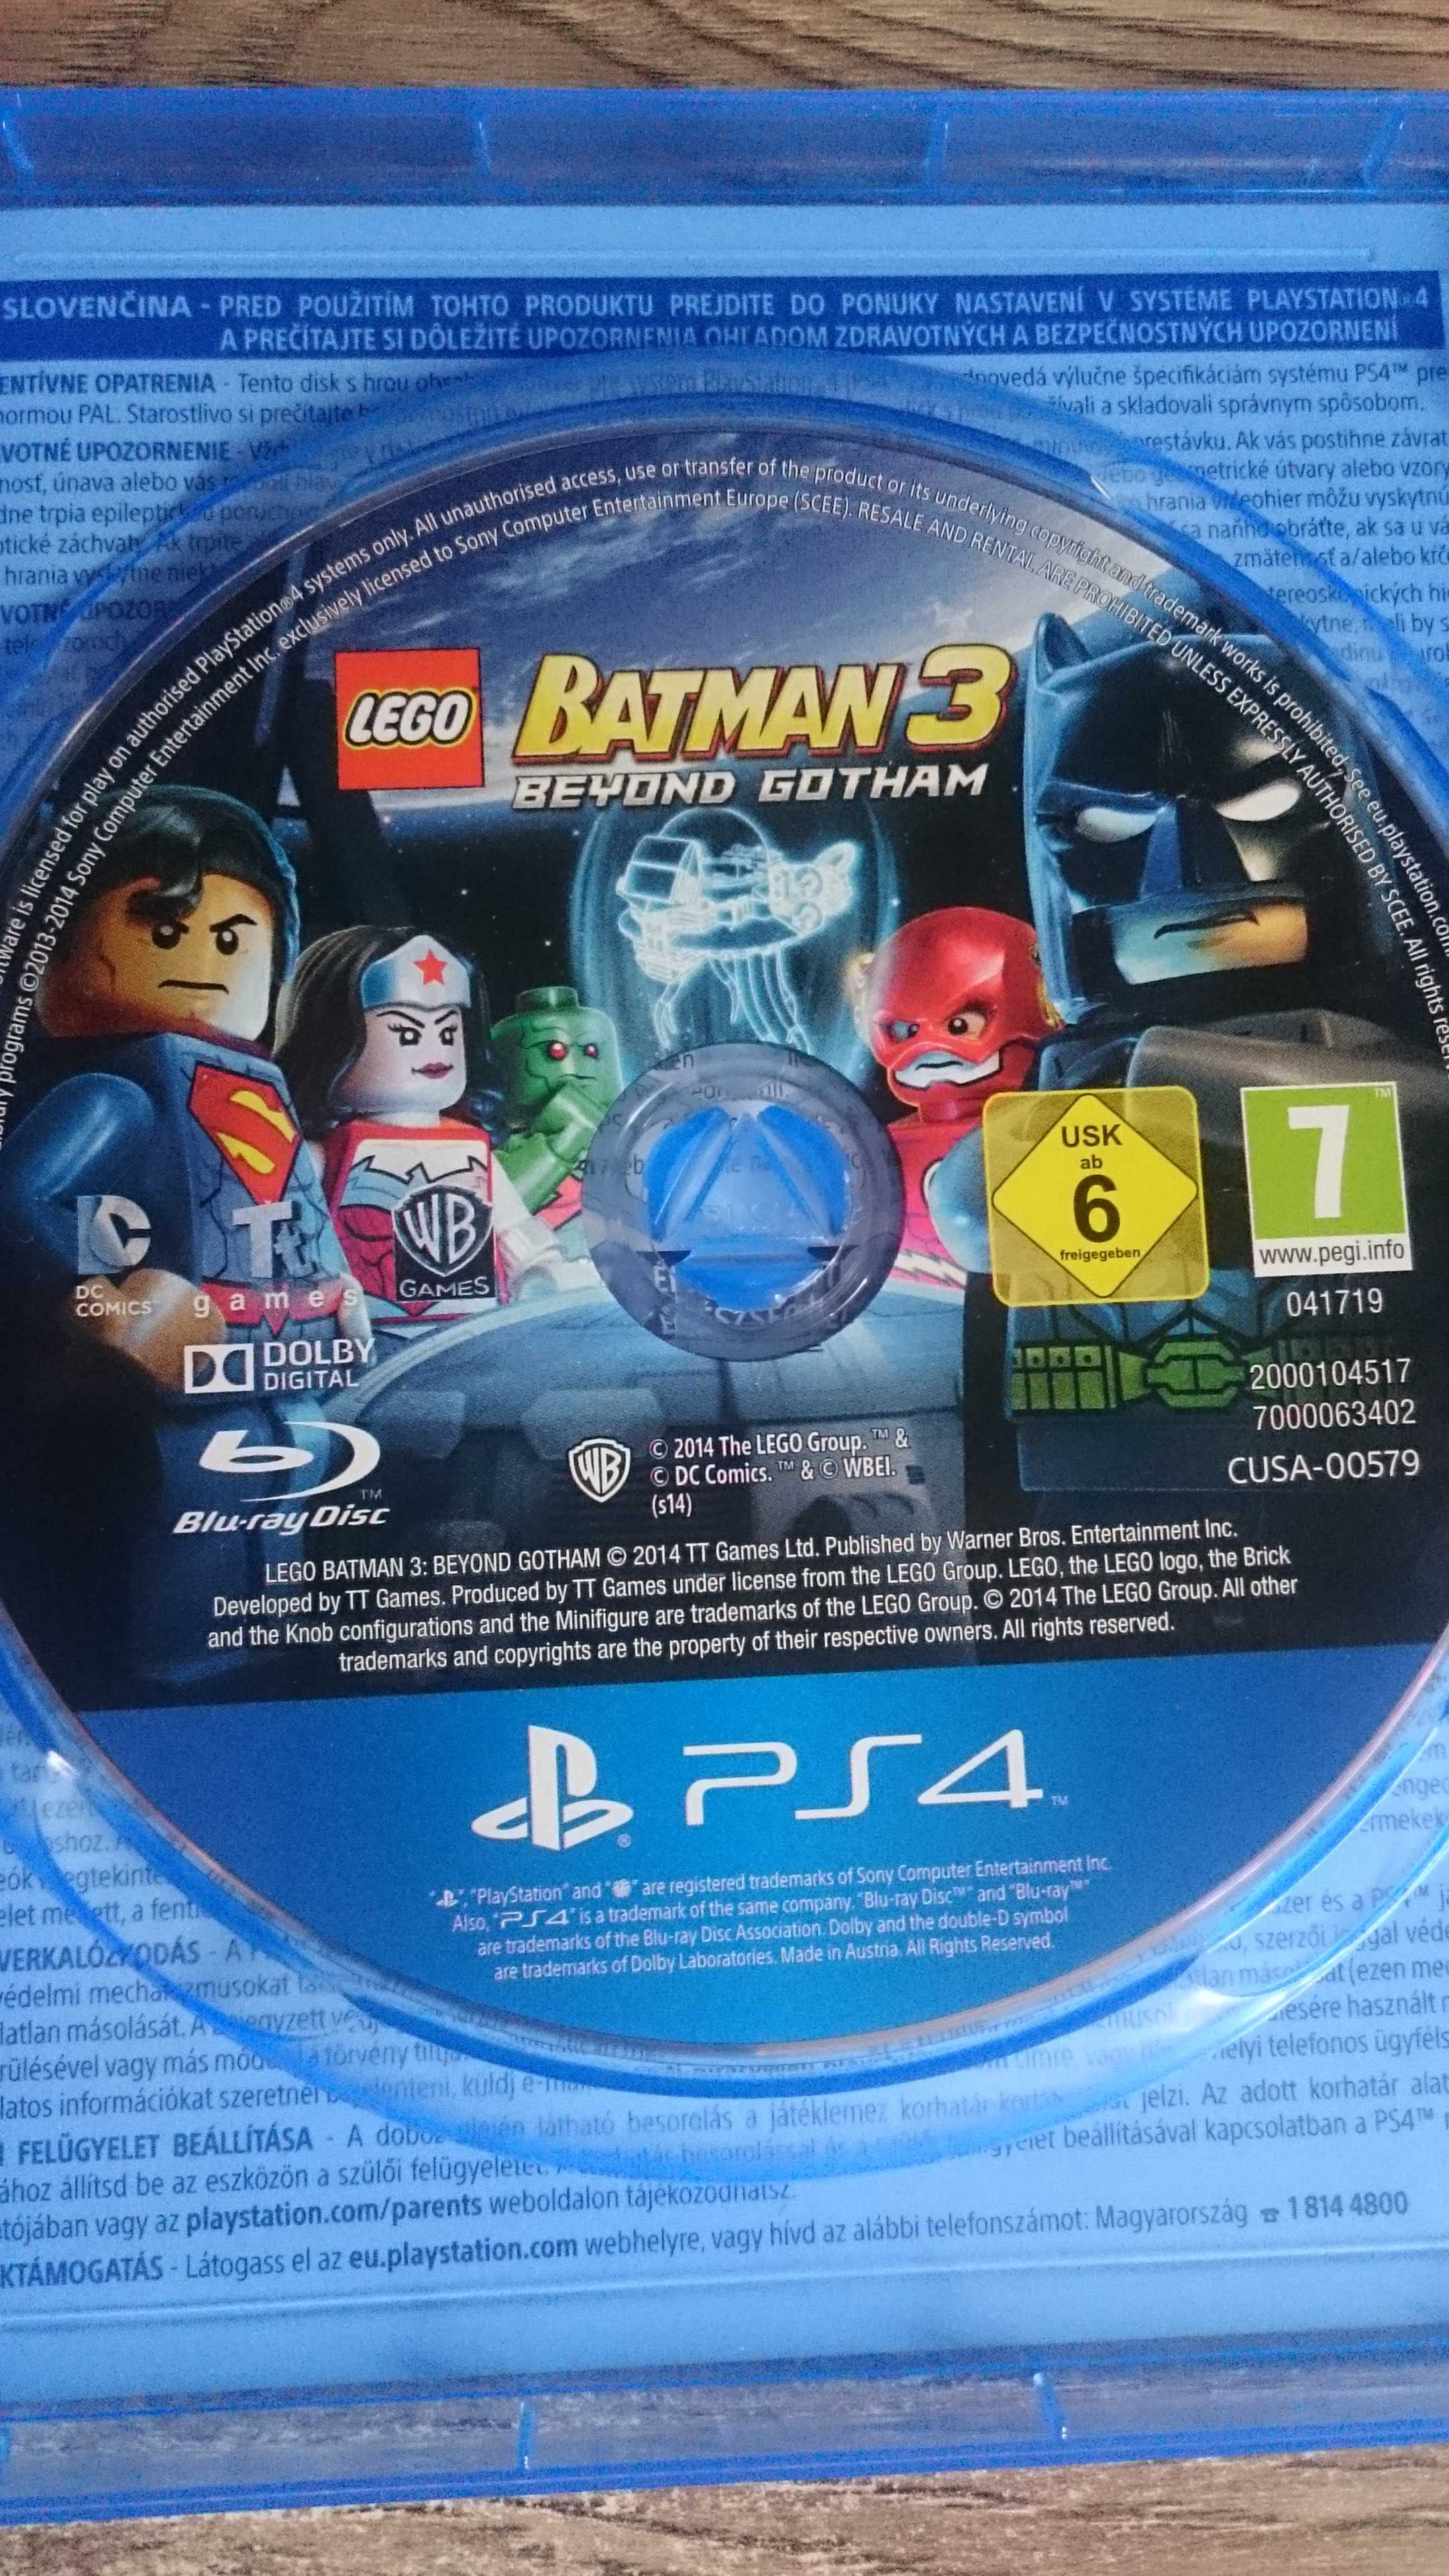 Lego Batman 3 Poza Gotham polska wersja PS4 Playstation 4 Marvel